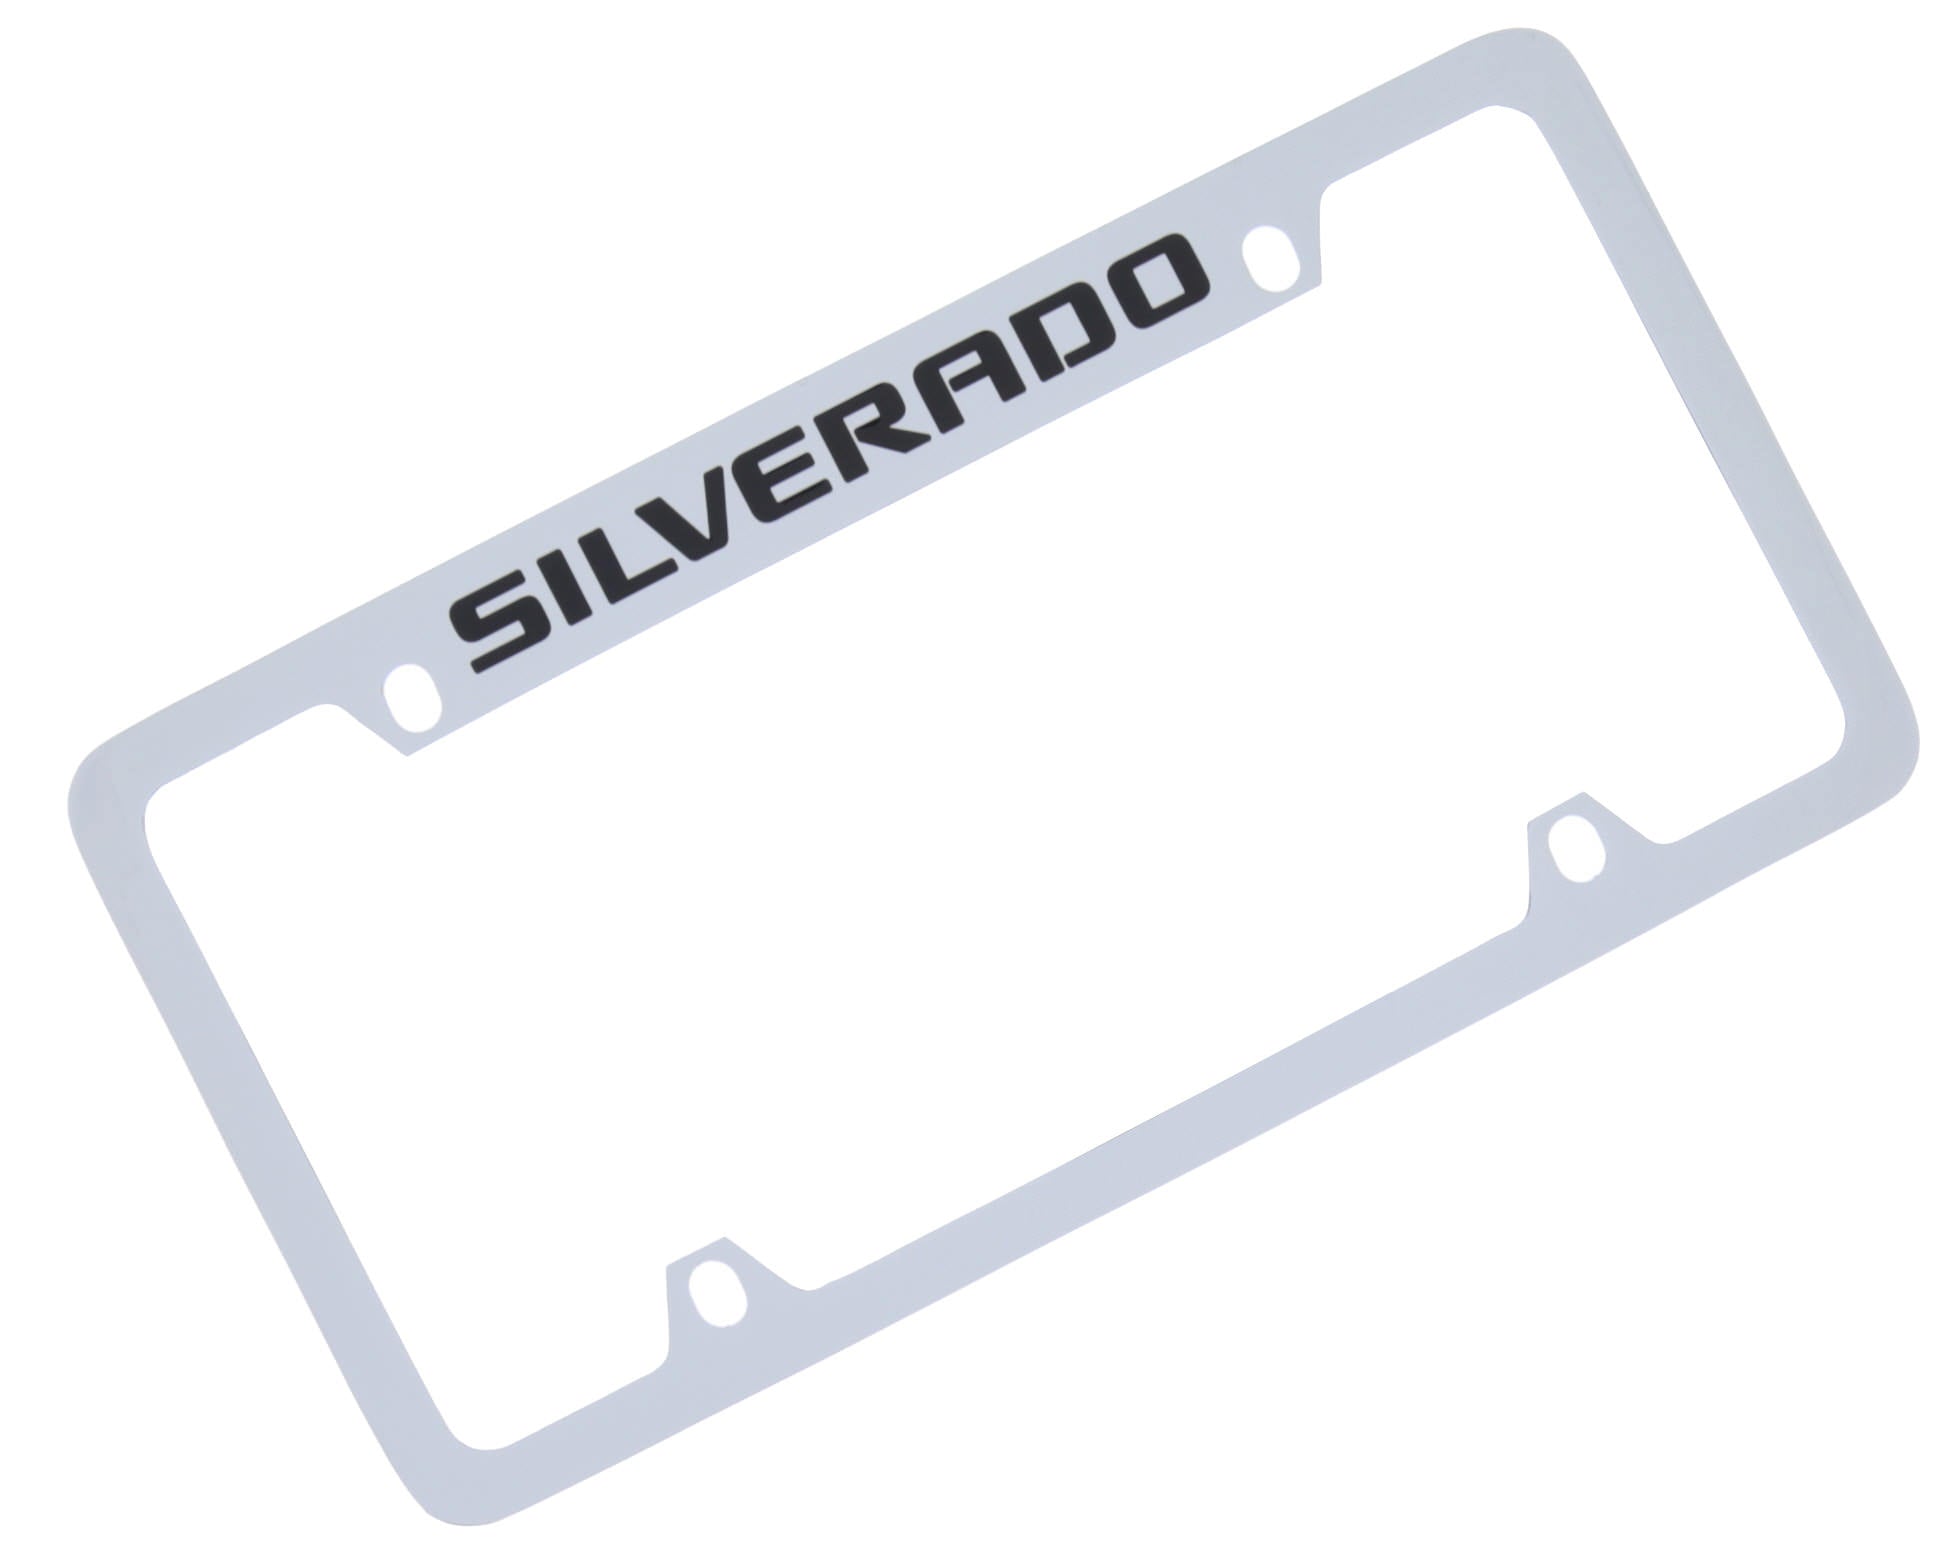 Chevrolet,Silverado,License Plate Frame